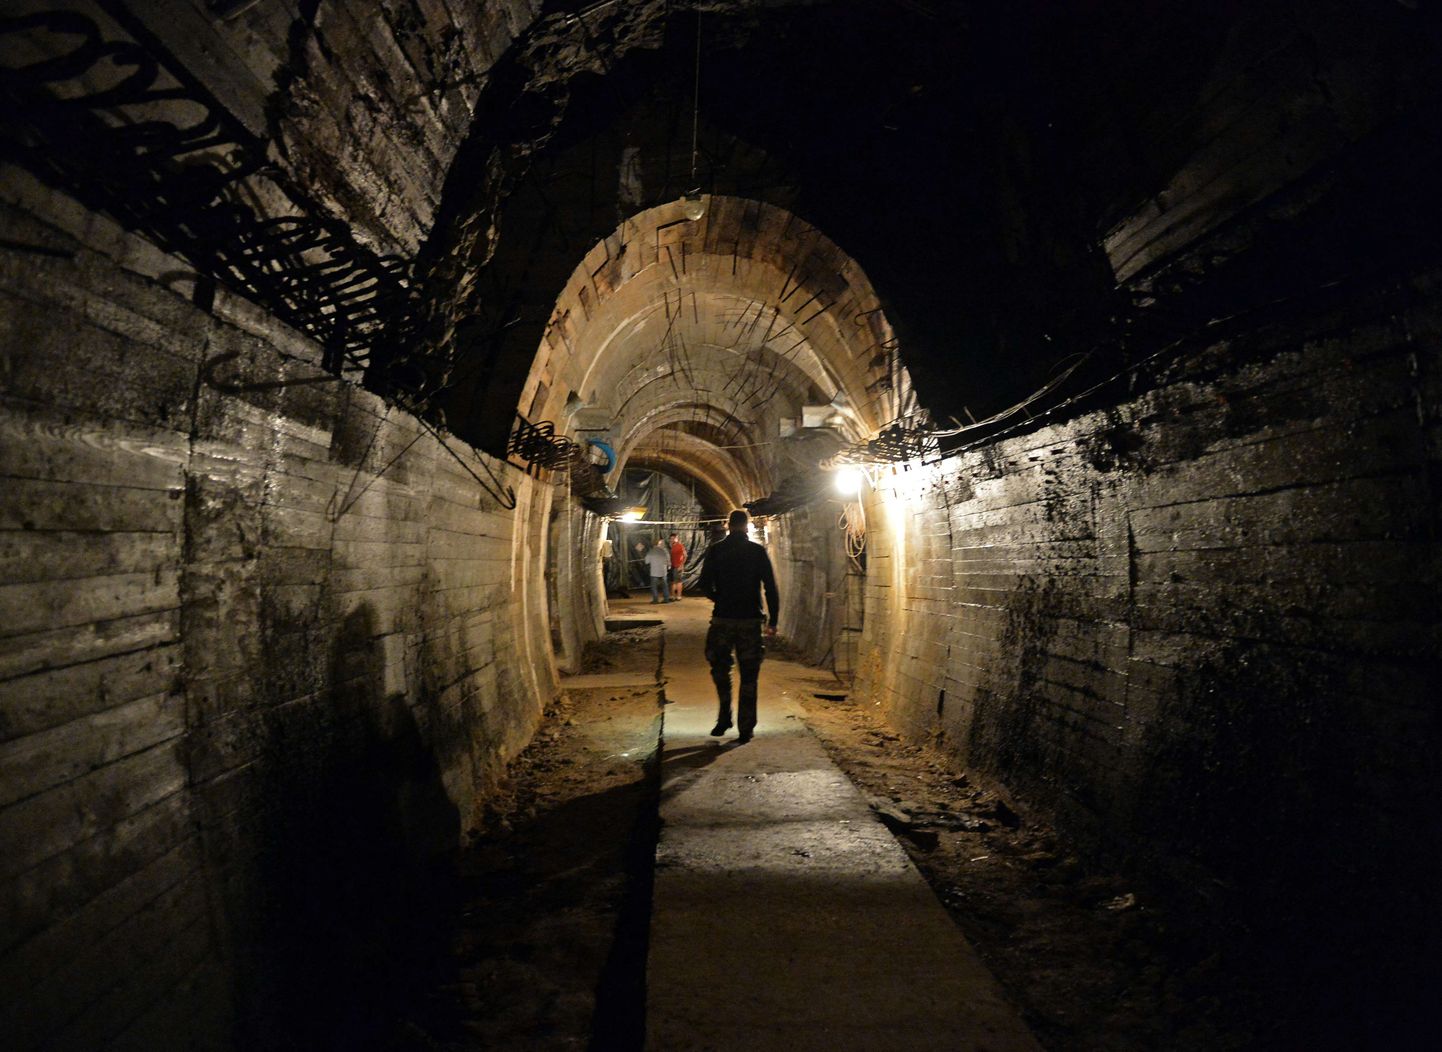 Natside ehitatud tunnel, mis tänapäeval asub Poola aladel Gluszyca-Osowkas.